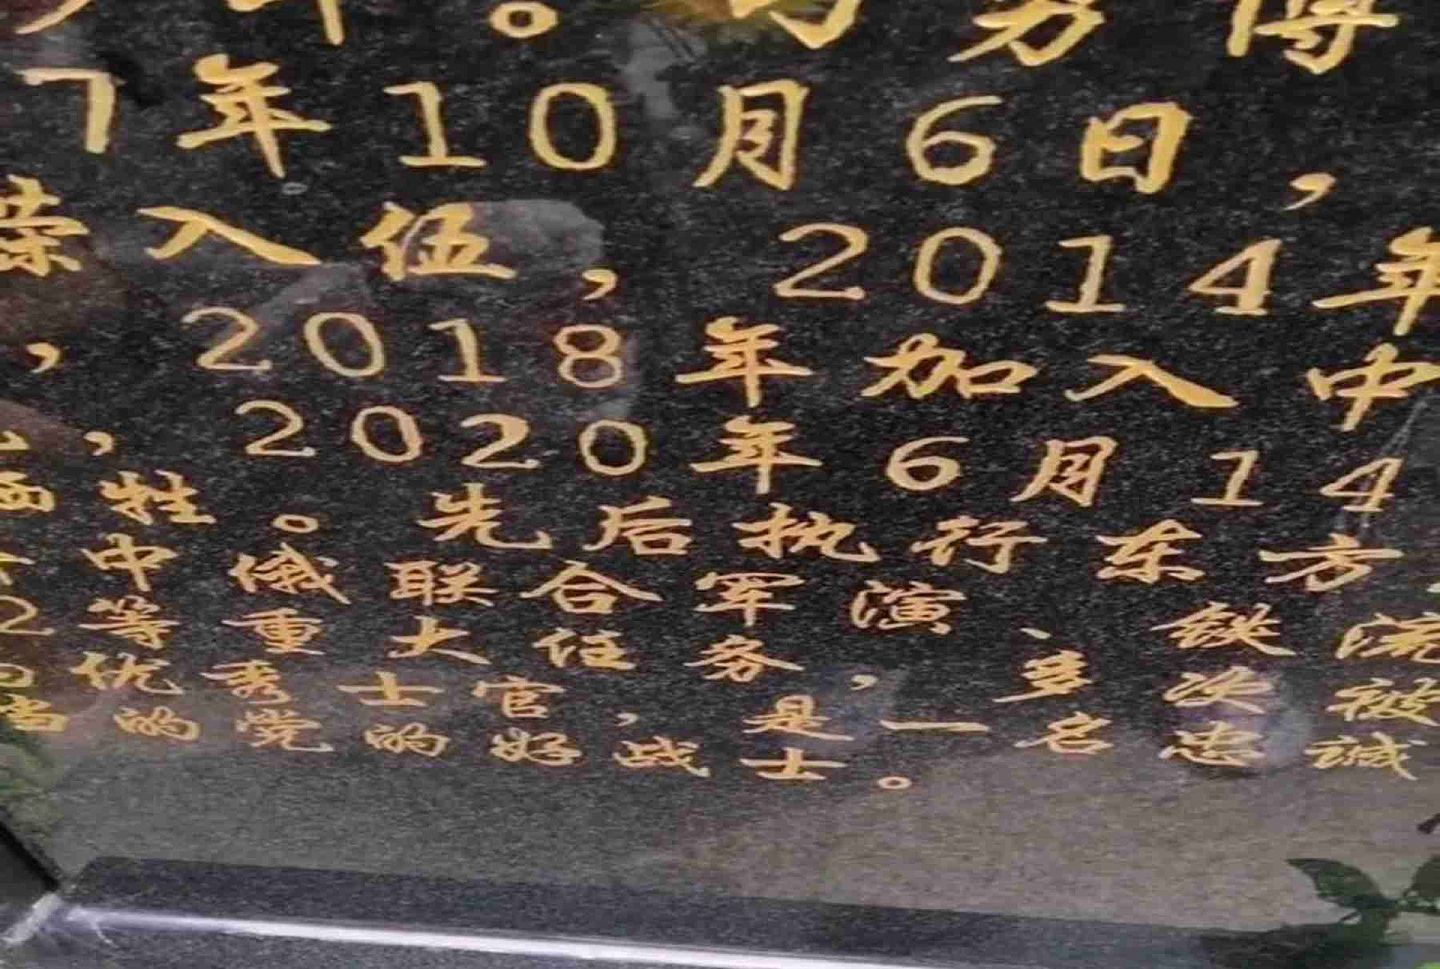 墓碑显示，刁勇博于6月14日牺牲，曾多次执行重大任务。（微博@-四分三十三秒- ）